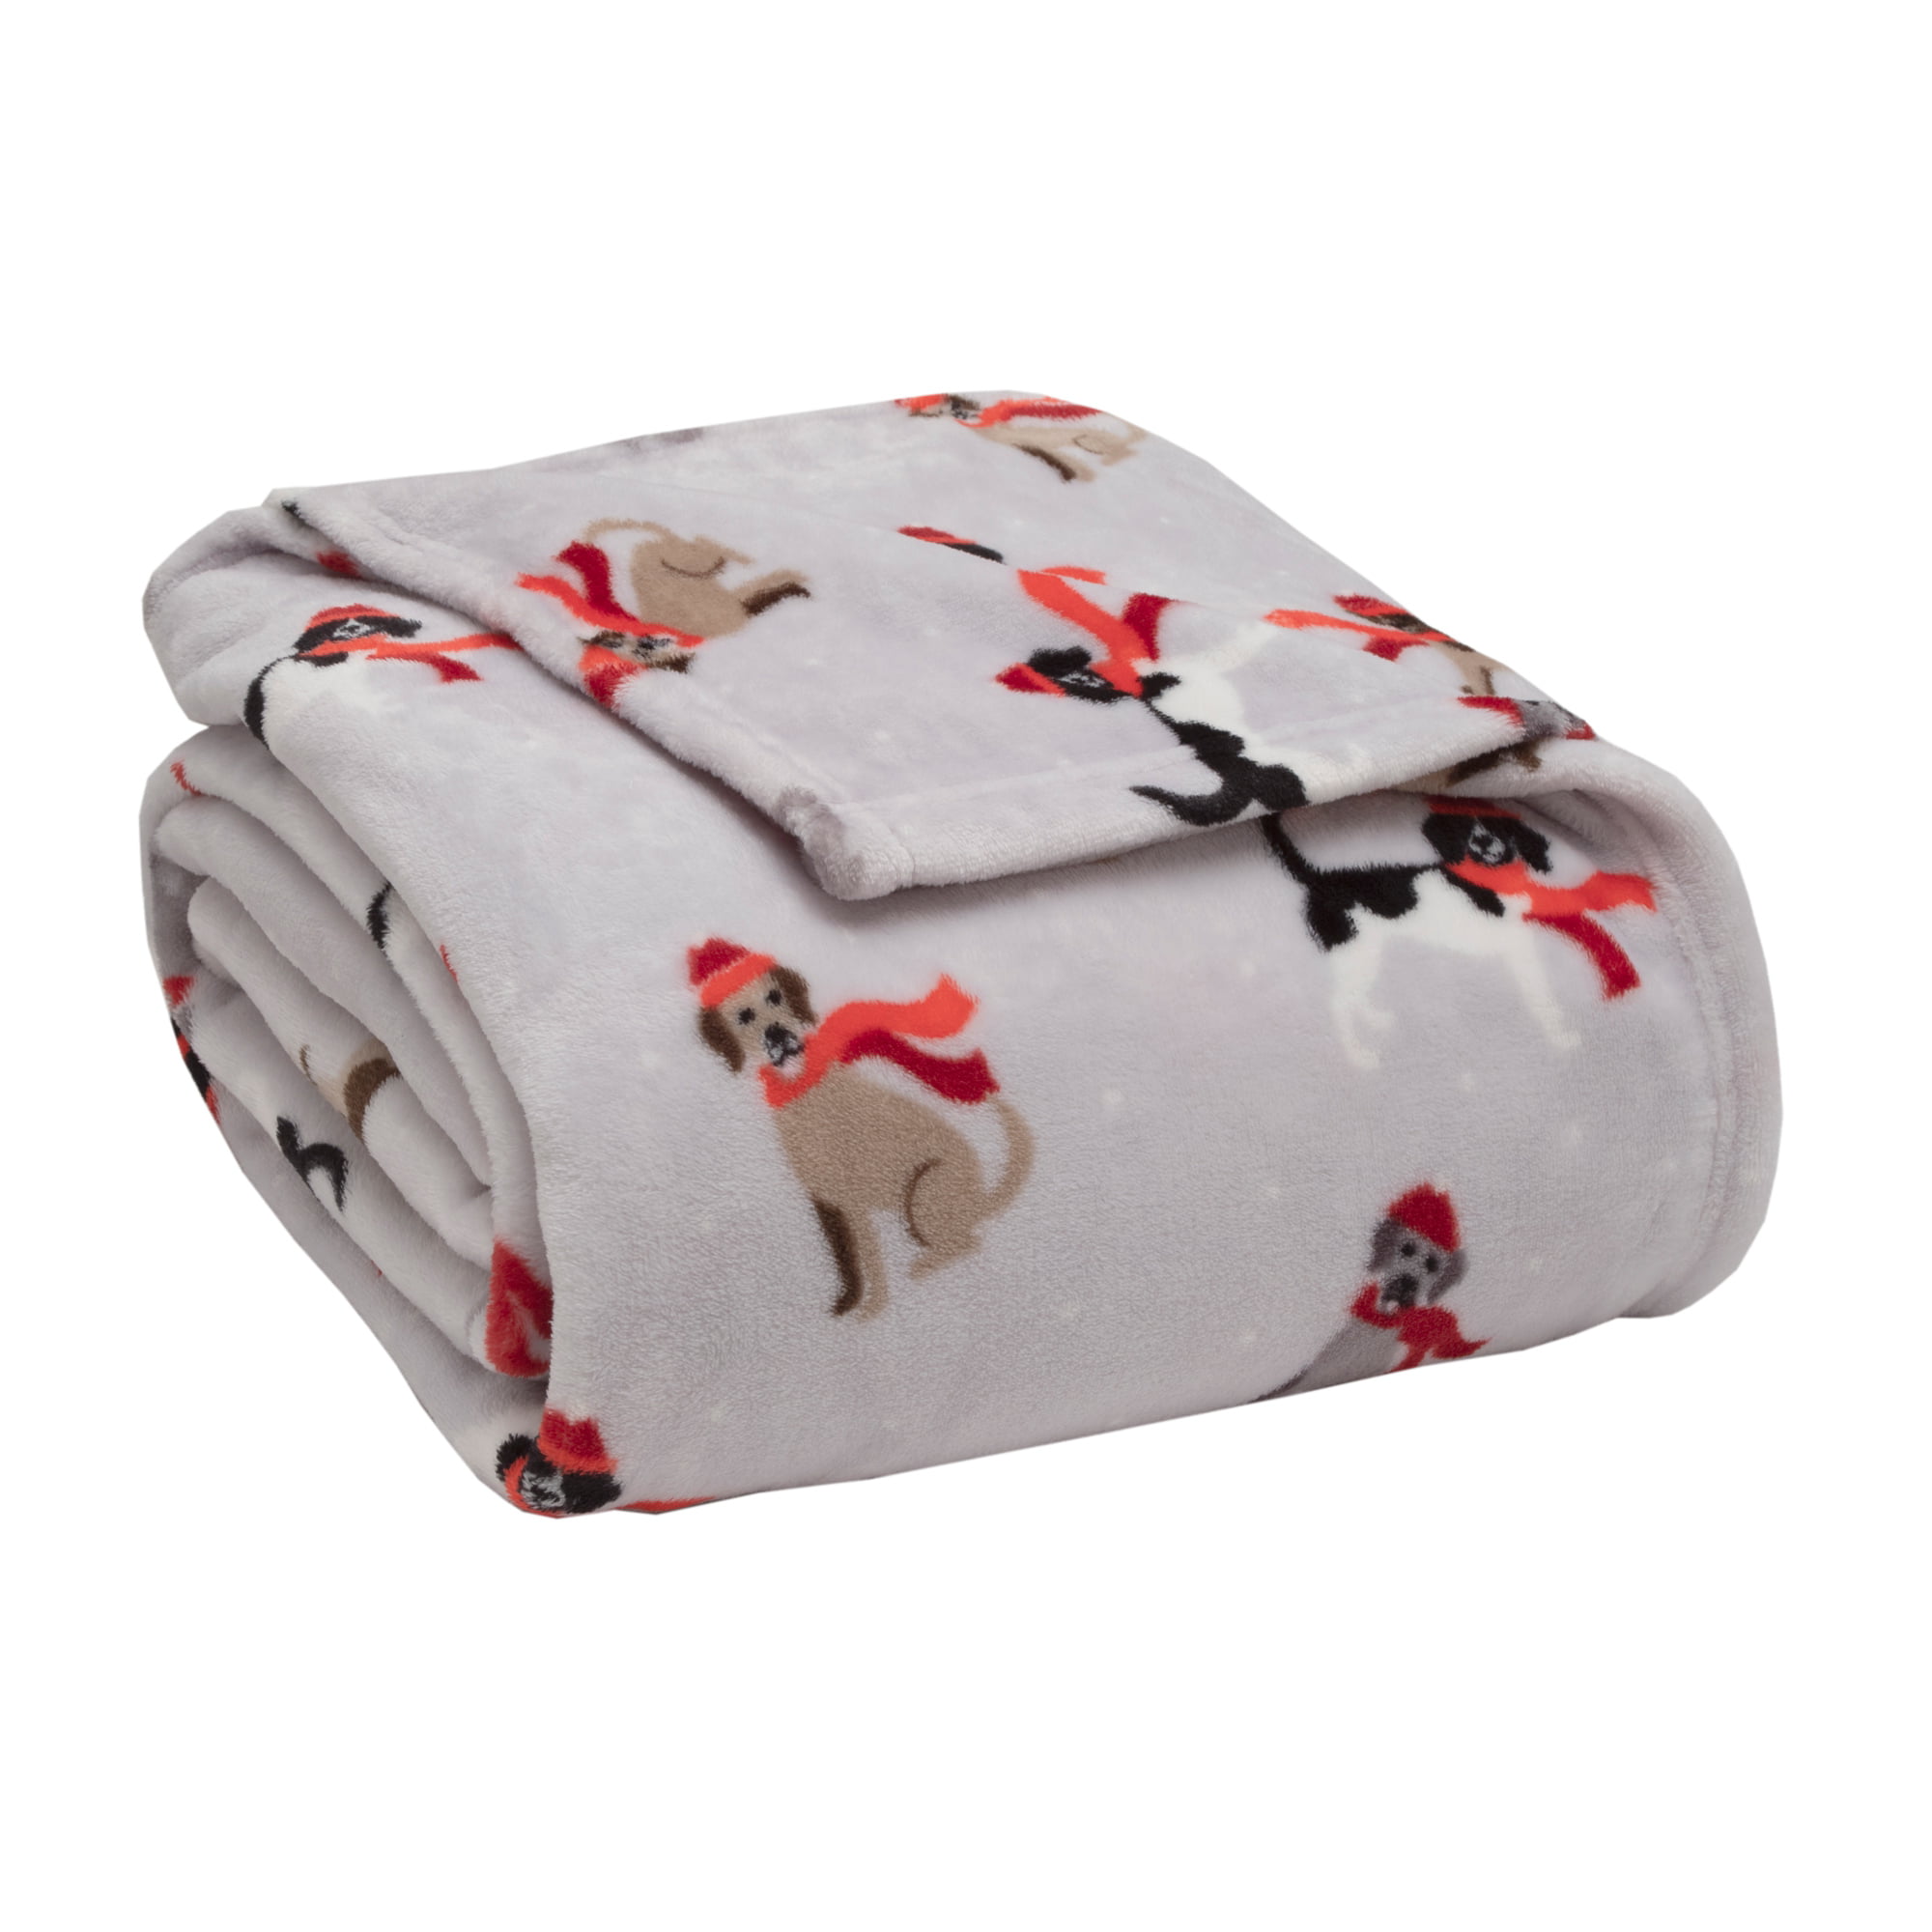 Plush Velvety Holiday Winter Dog Puppy Animal Lover Full/Queen Blanket Oversized Christmas Throw